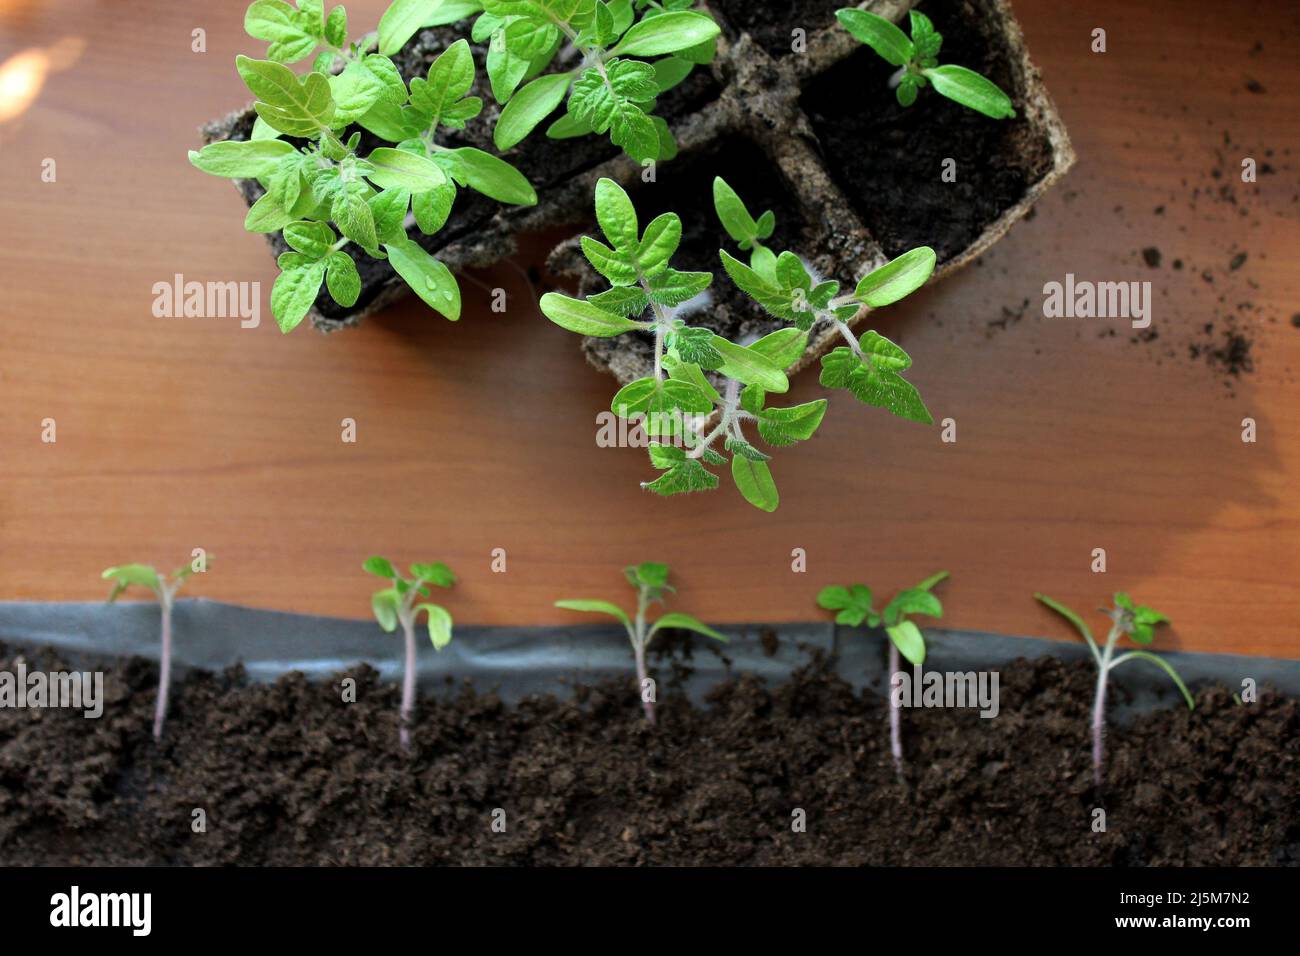 Neue Art, Tomaten zu keimen. Platzsparende Methode für Tomaten-Setzlinge. Pflanzung von Setzlingen, Ausstechen. Stockfoto